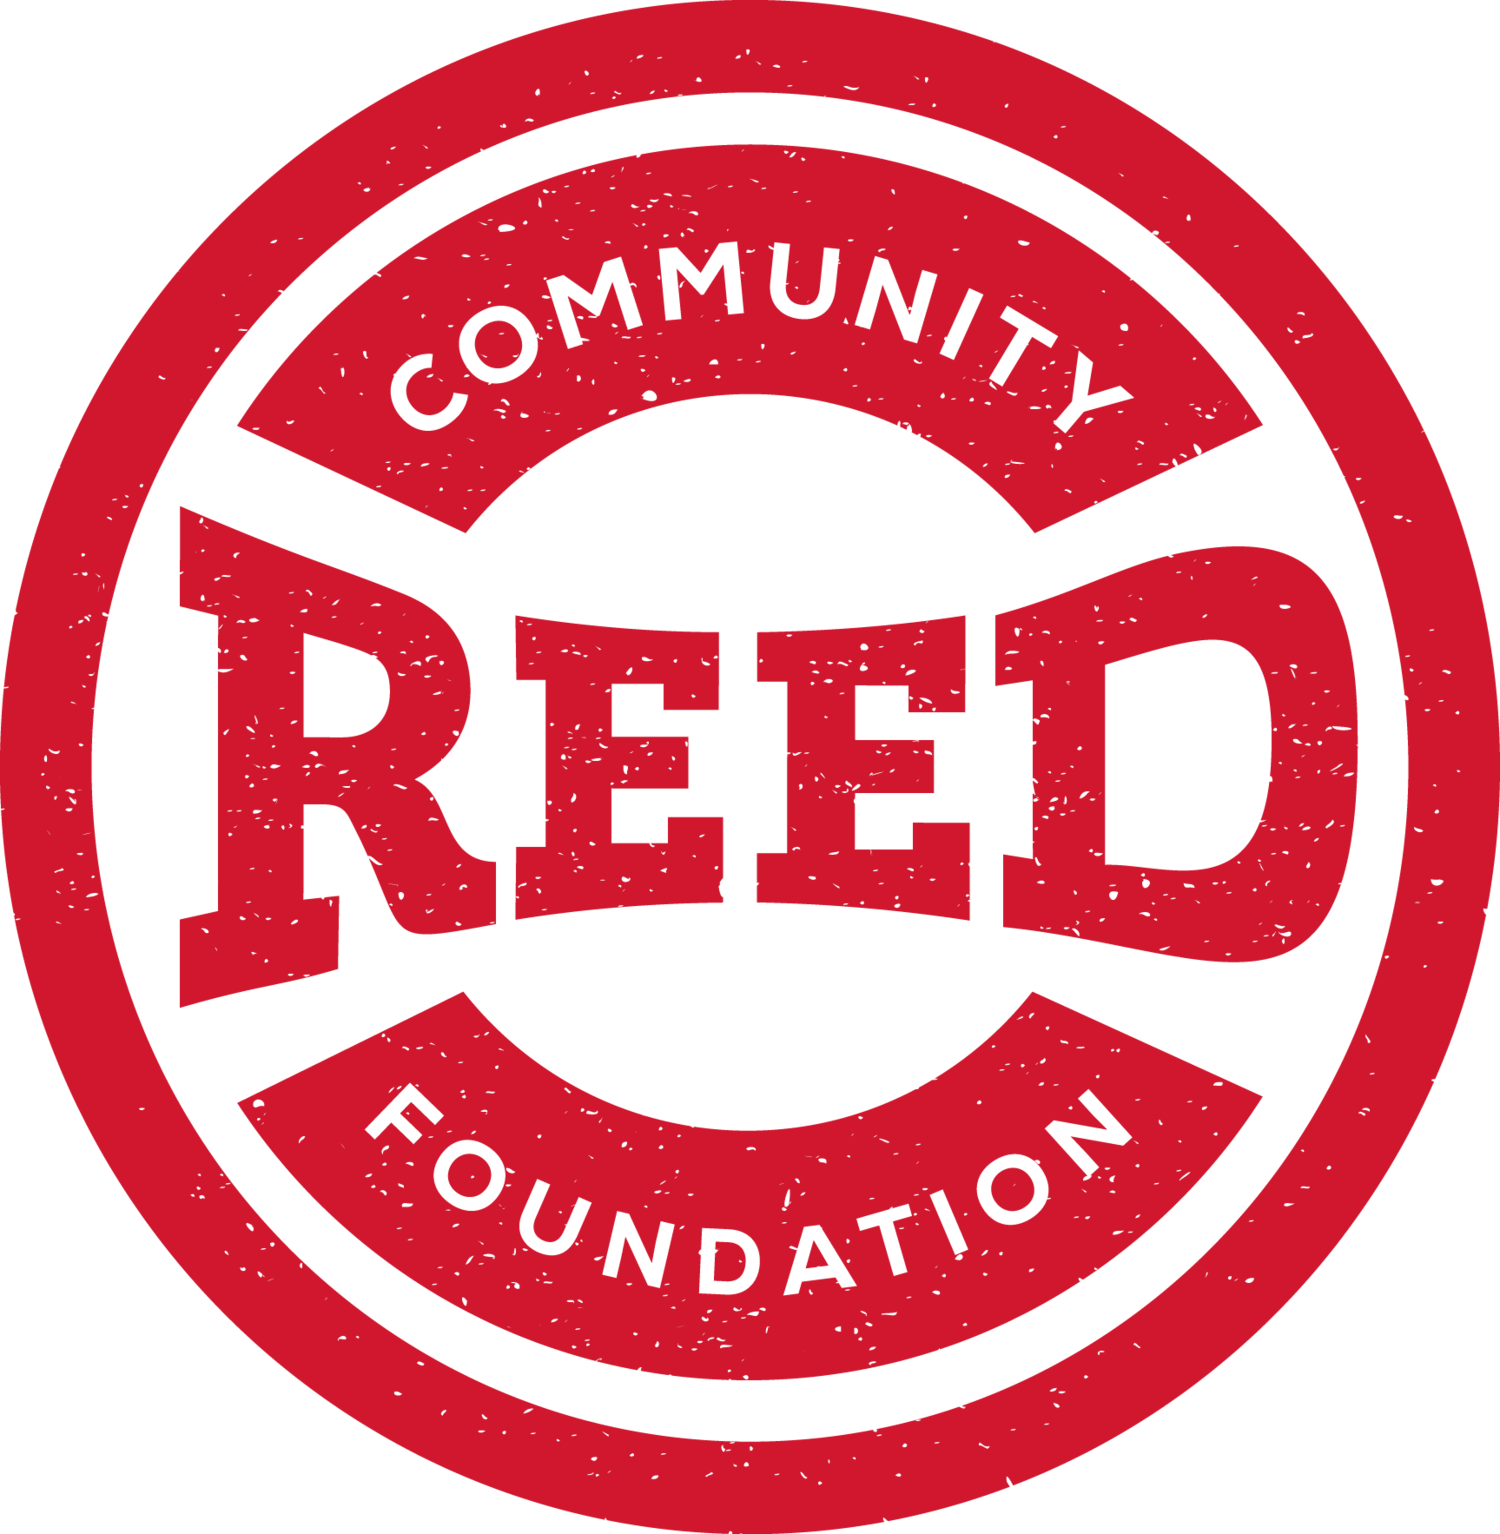 Reed Community Foundation logo